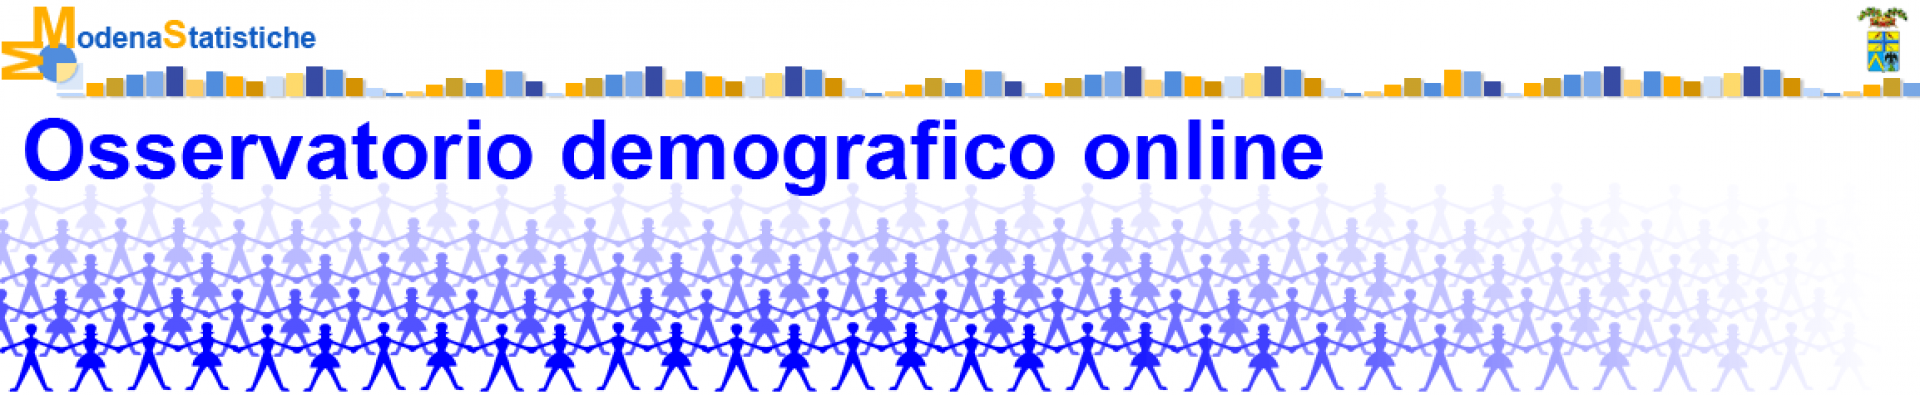 Osservatorio Demografico Online - ModenaStatistiche - sulla destra in alto logo della Provincia di Modena